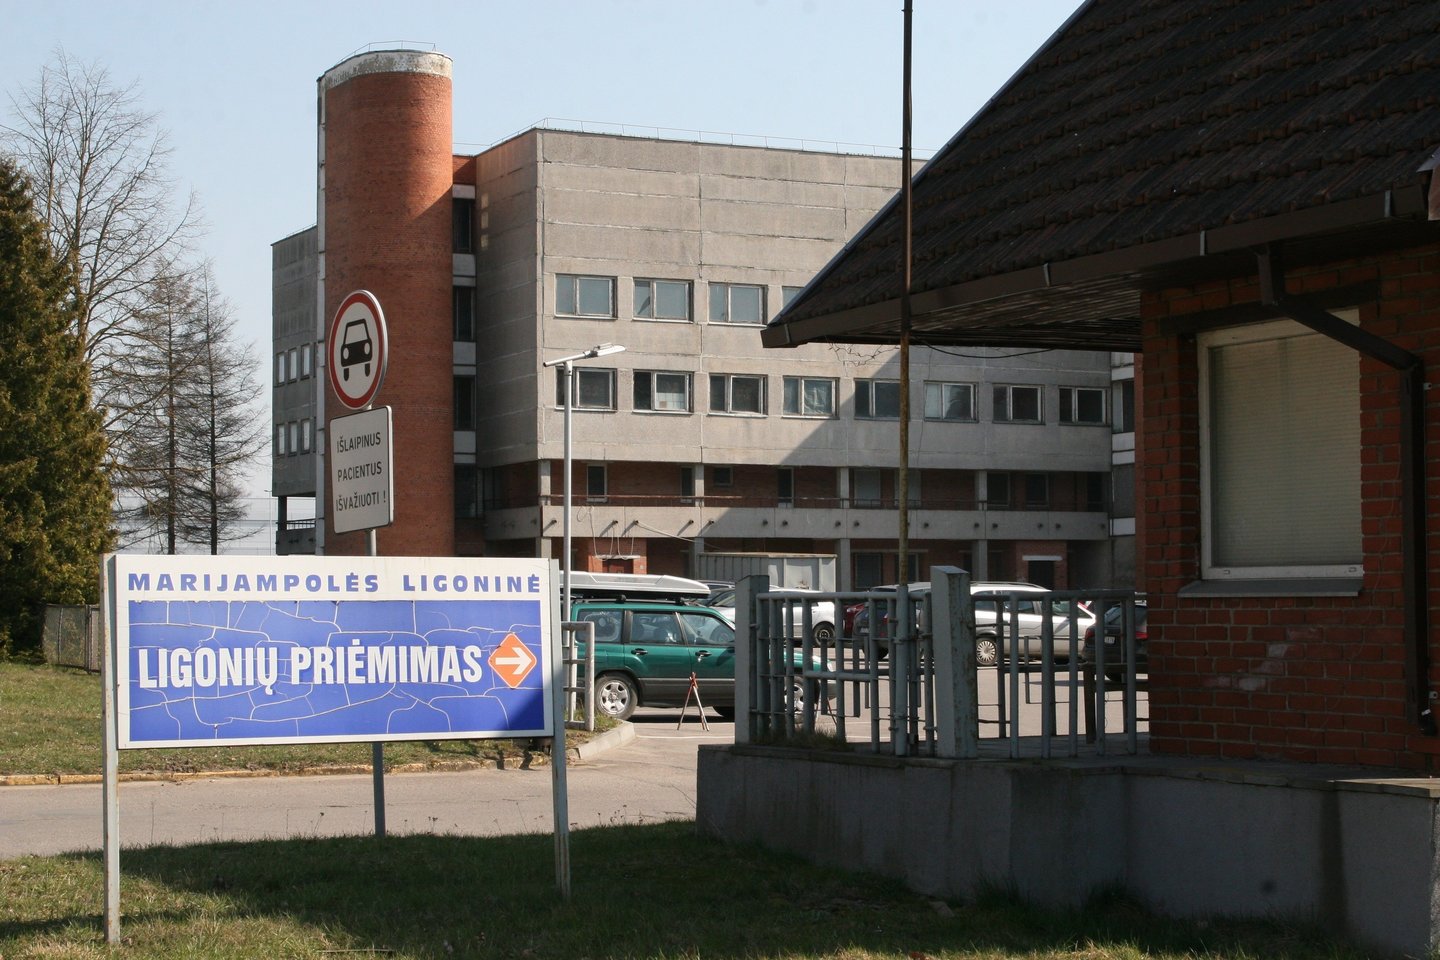 Marijampolės ligoninė<br>Asociatyvinė L.Juodzevičienės nuotr.